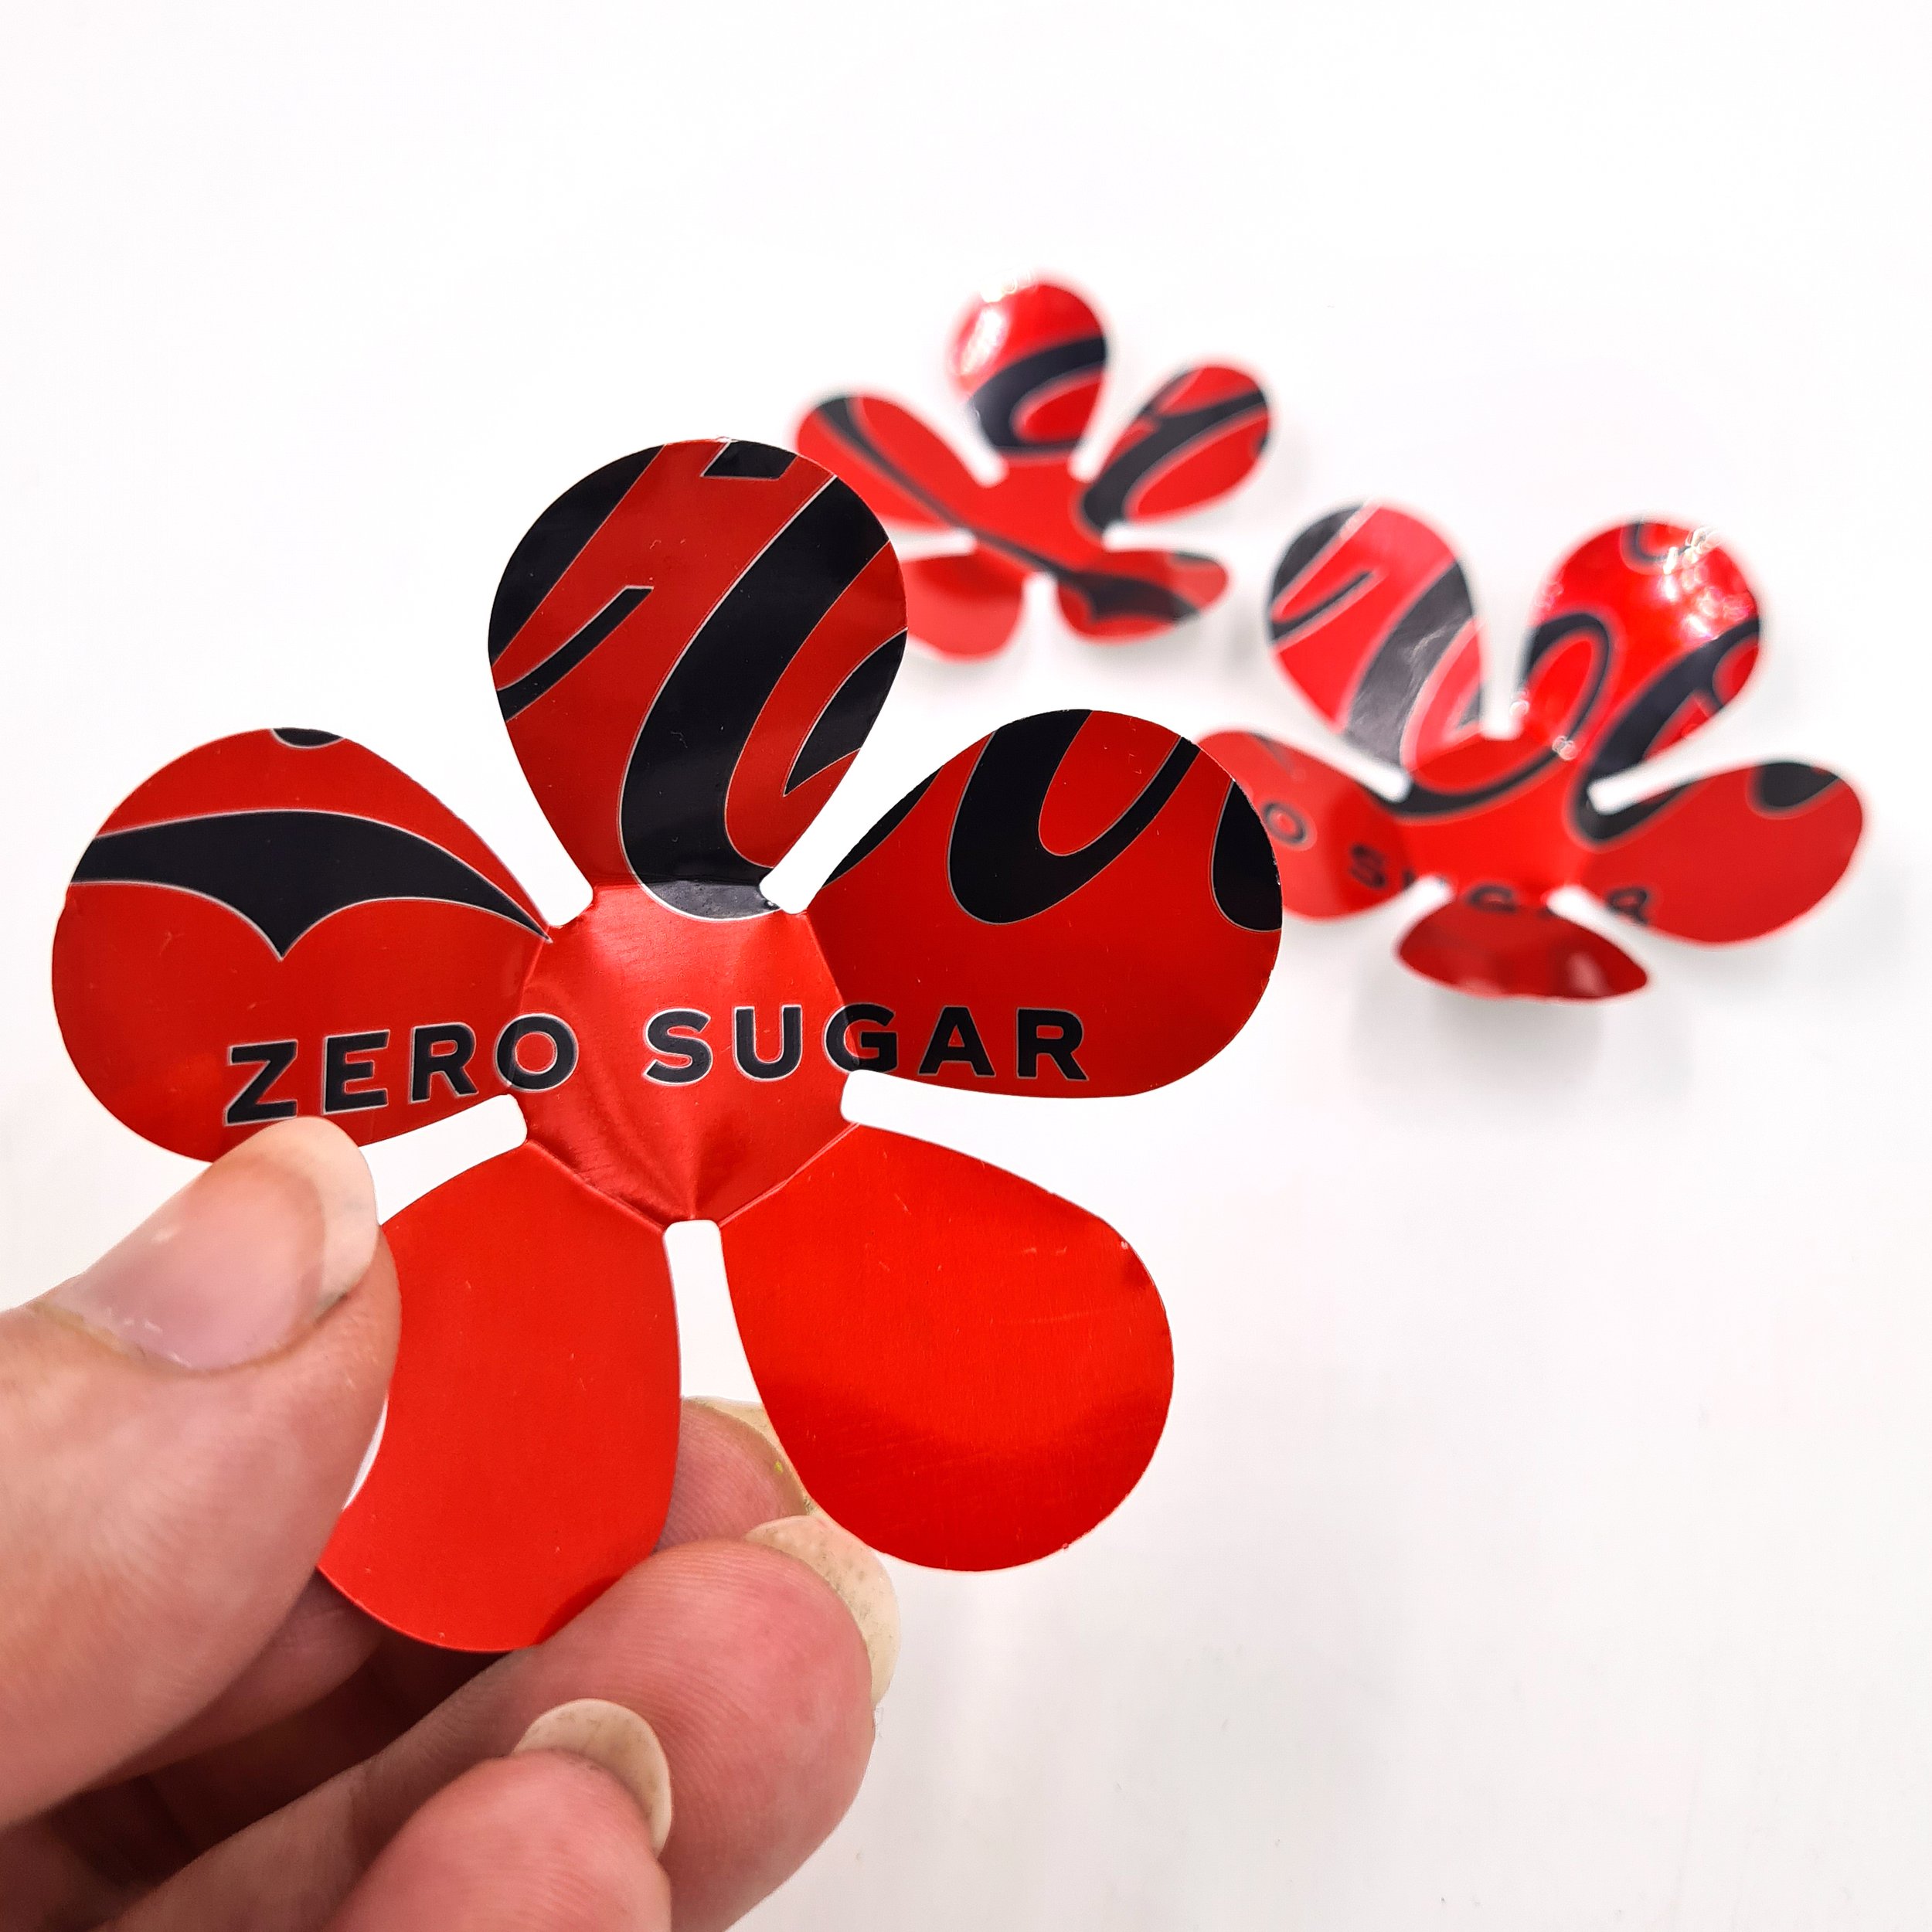 Coke Zero Flower Magnets 2.jpg